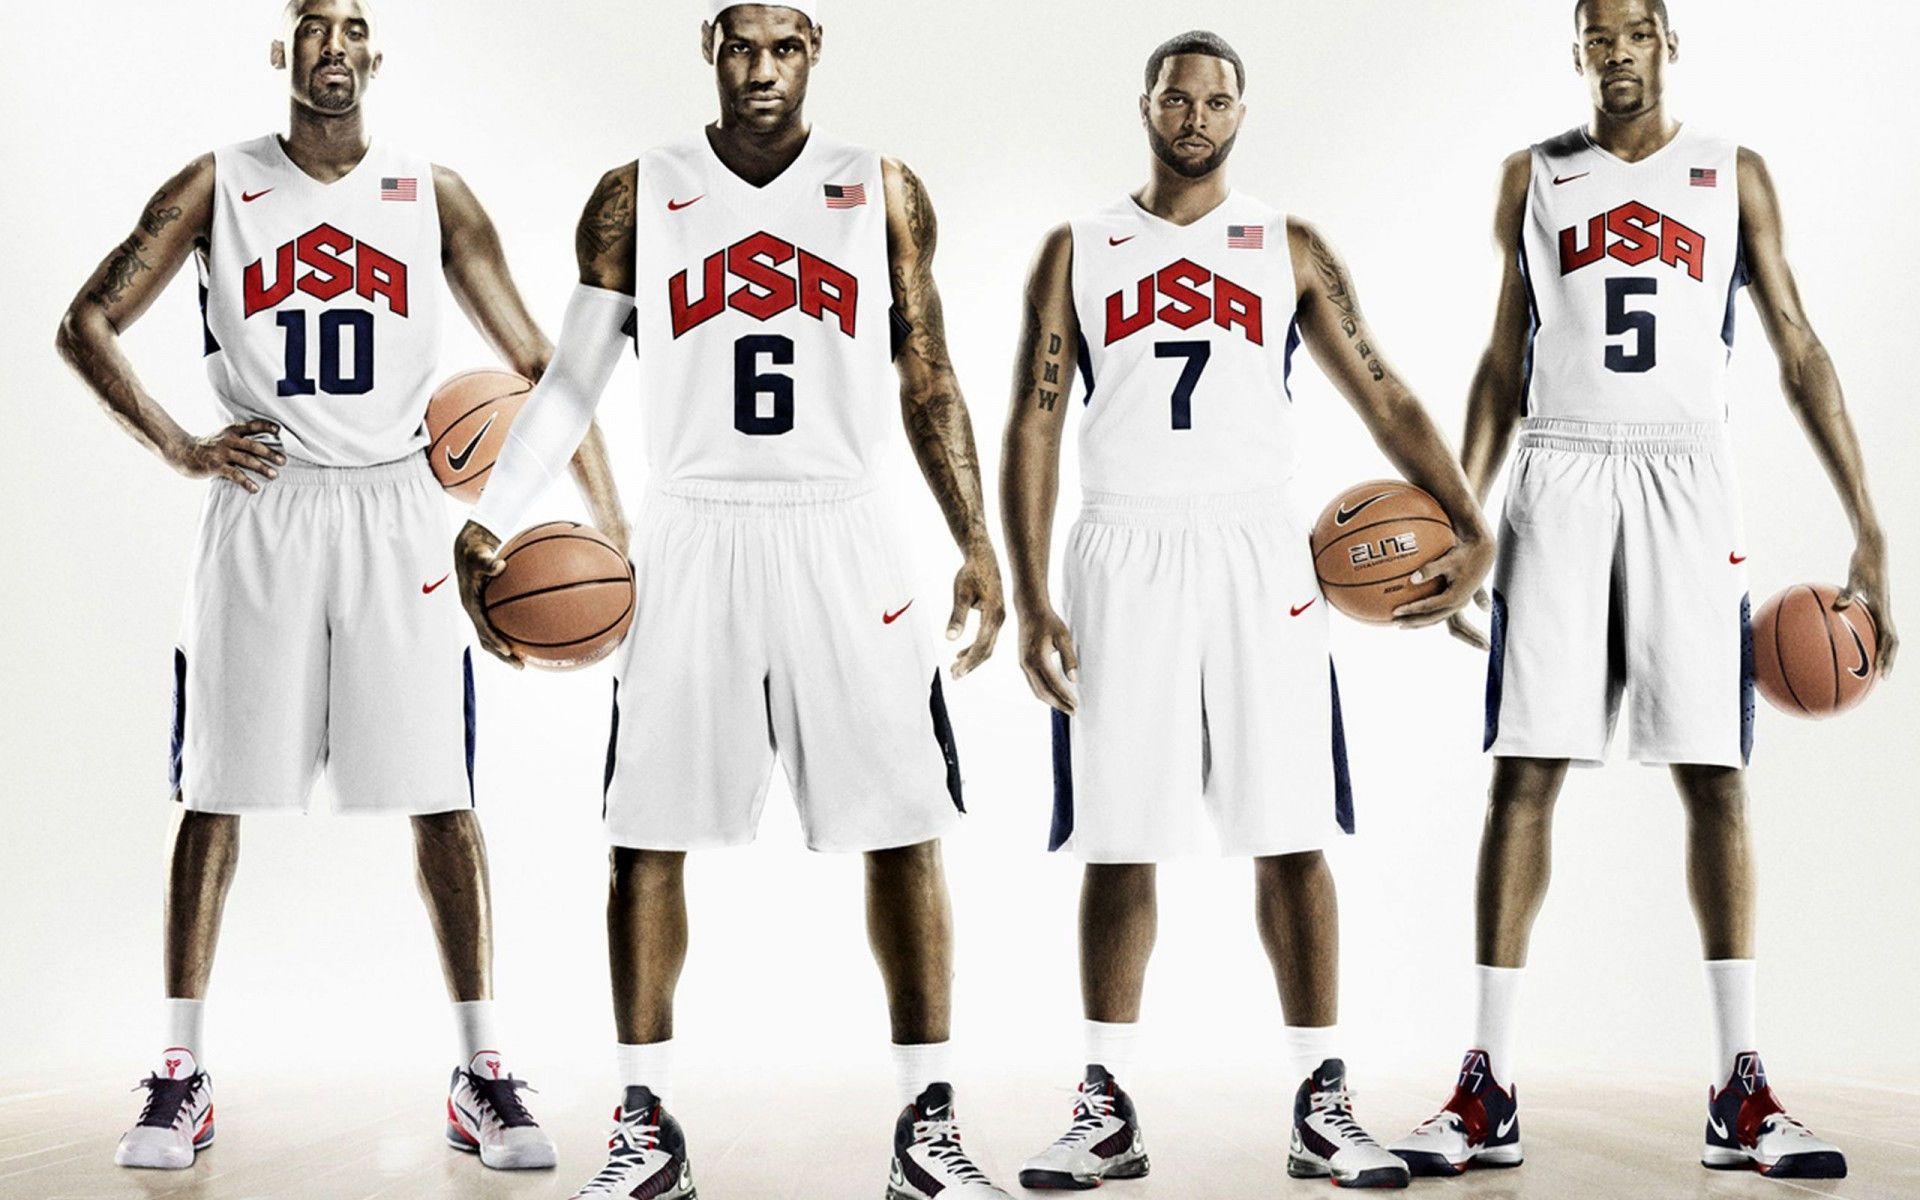 USA Basketball Team Wallpaper. USA Basketball Photo. Cool